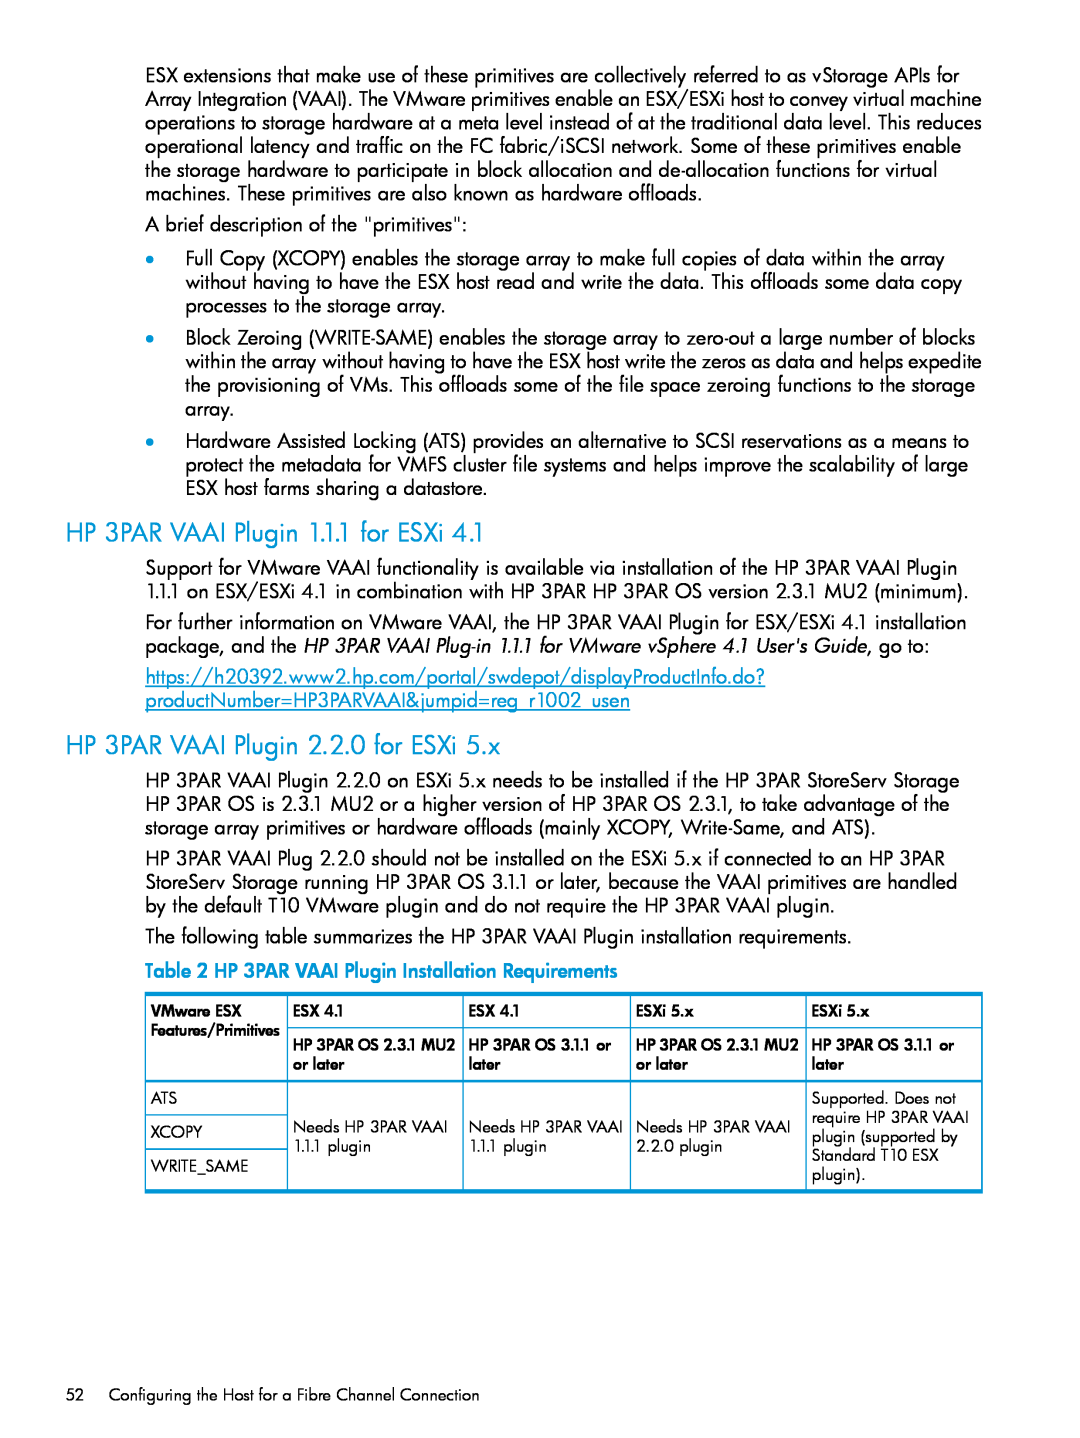 HP QR516B manual HP 3PAR VAAI Plugin 1.1.1 for ESXi, HP 3PAR VAAI Plugin 2.2.0 for ESXi 